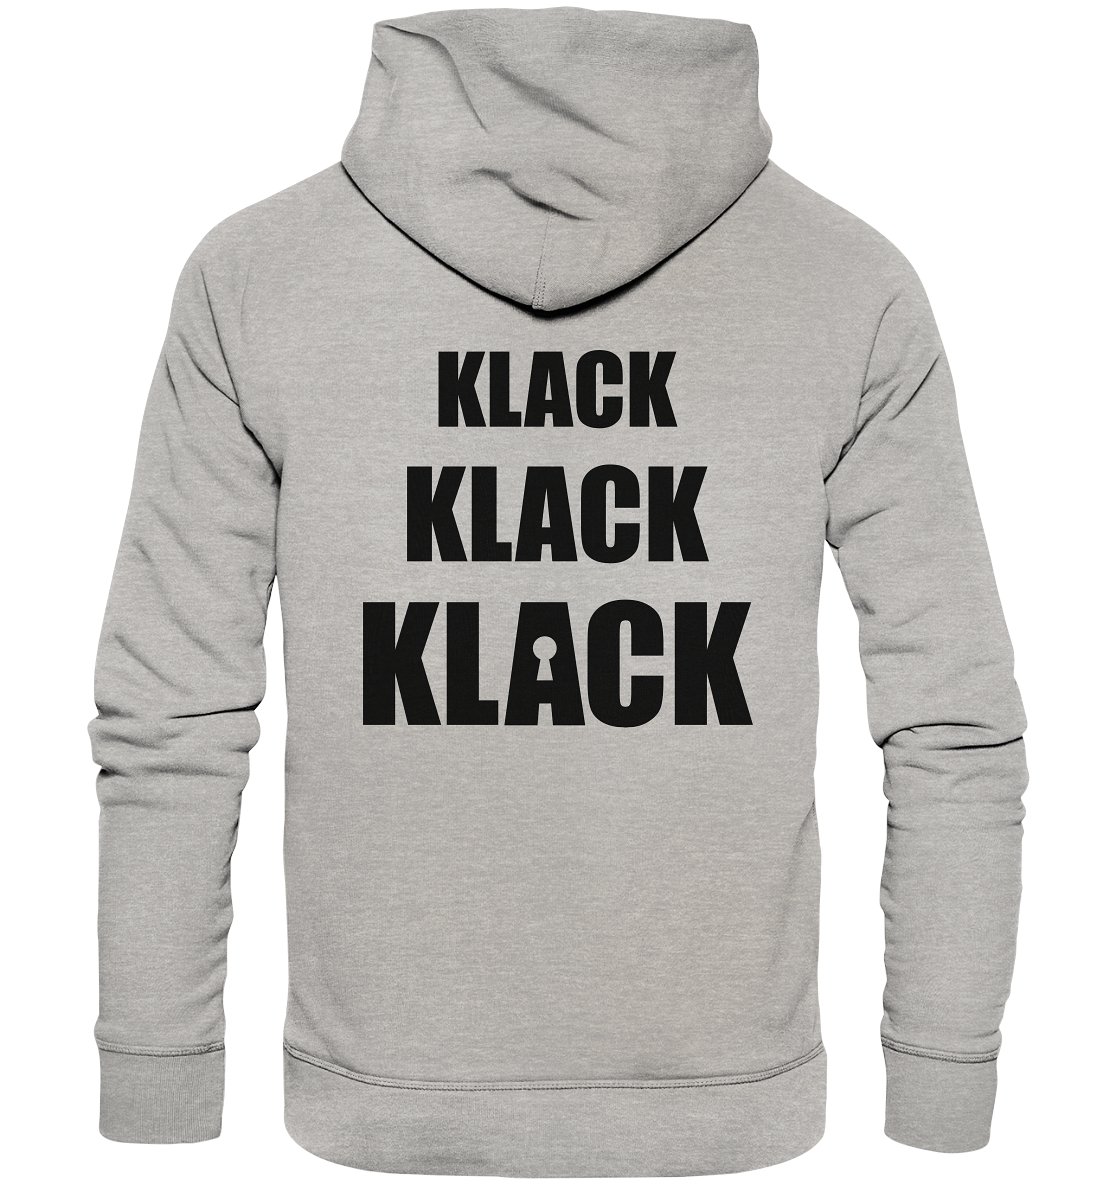 Klack - Organic Hoodie